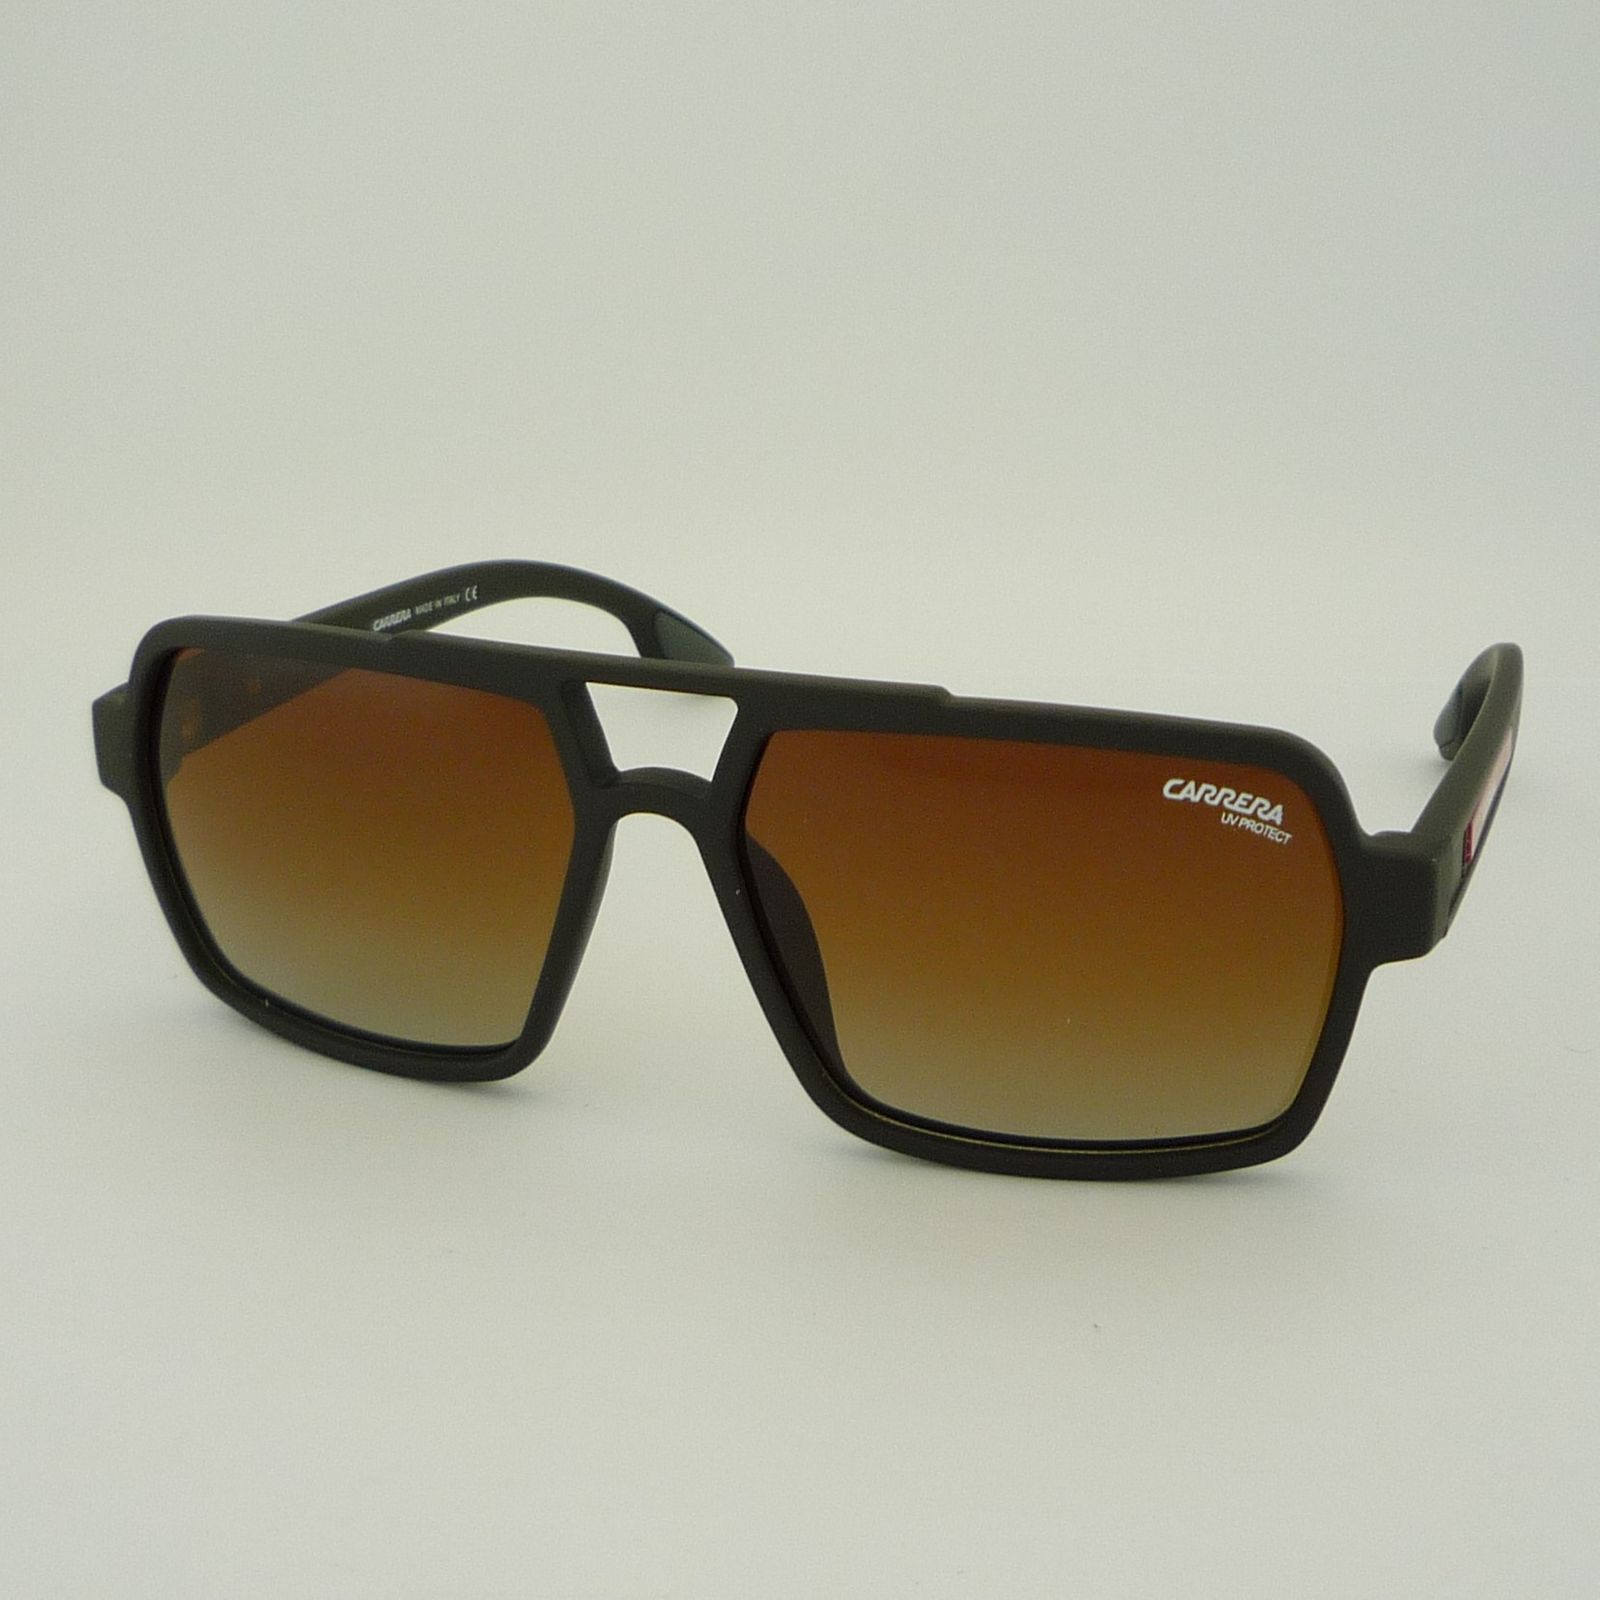 عینک آفتابی کاررا مدل 8248C5 -  - 3